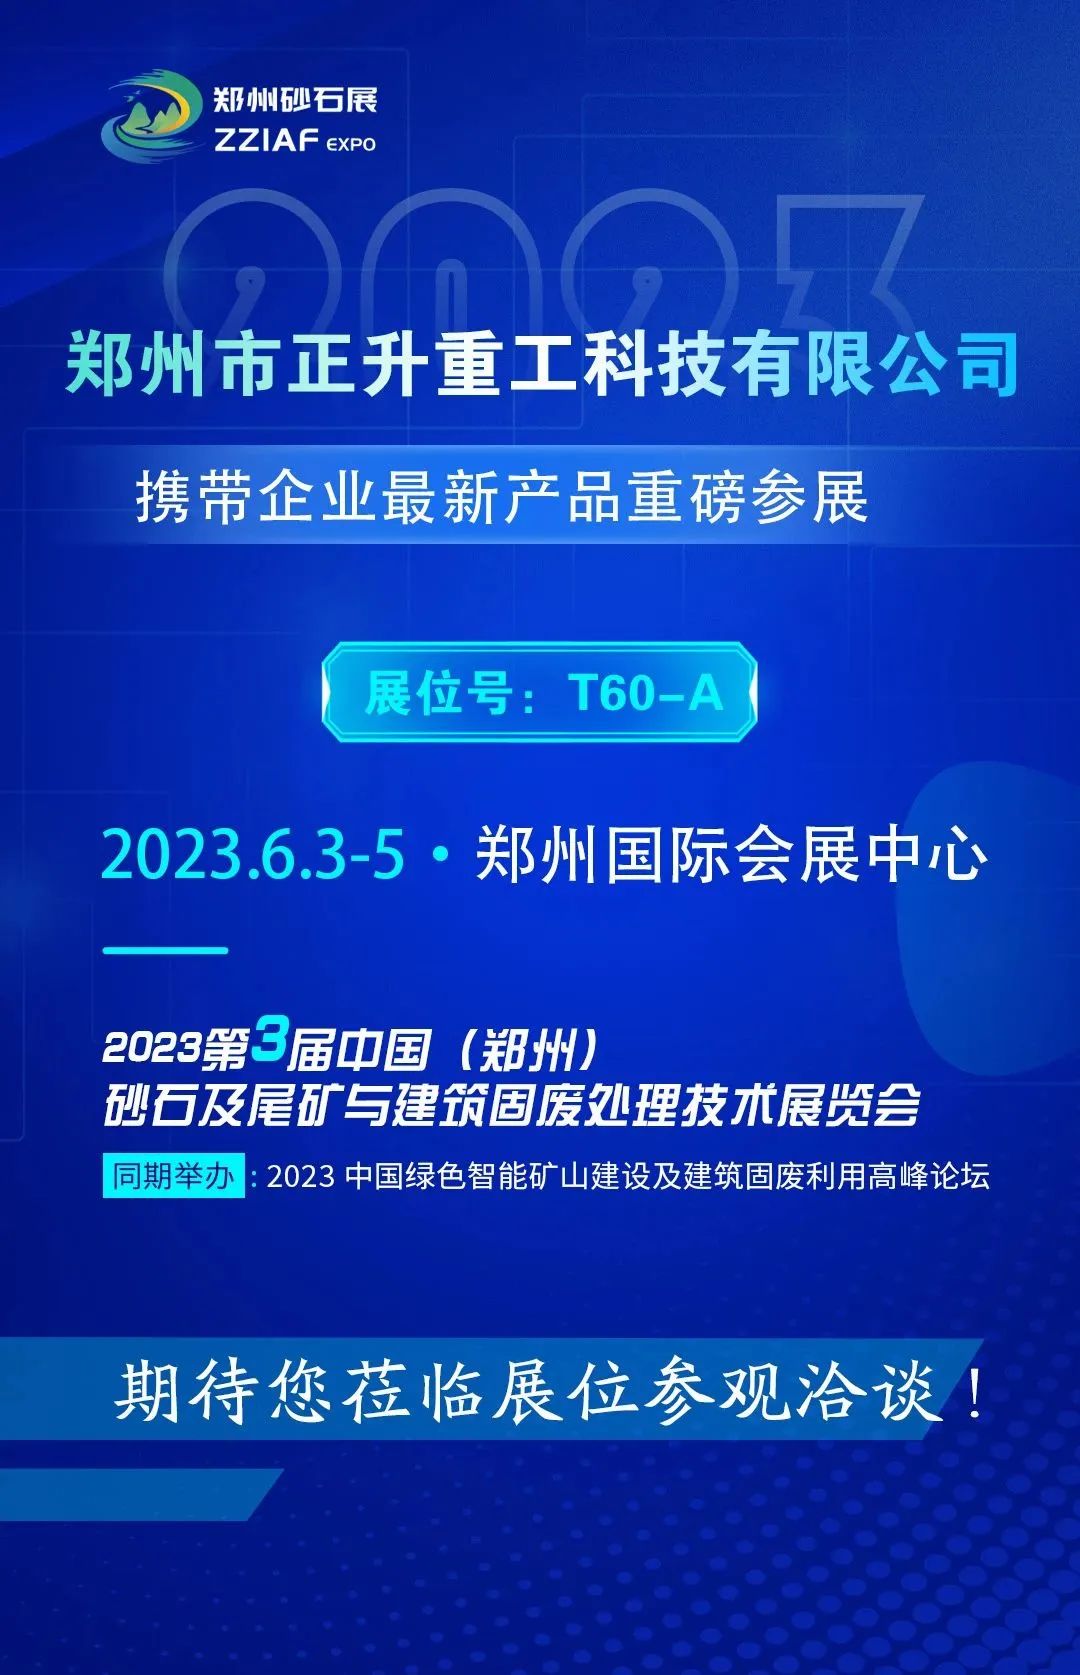 郑州砂石展2023 如约将至 您不能错过的正升重工科技！.jpg